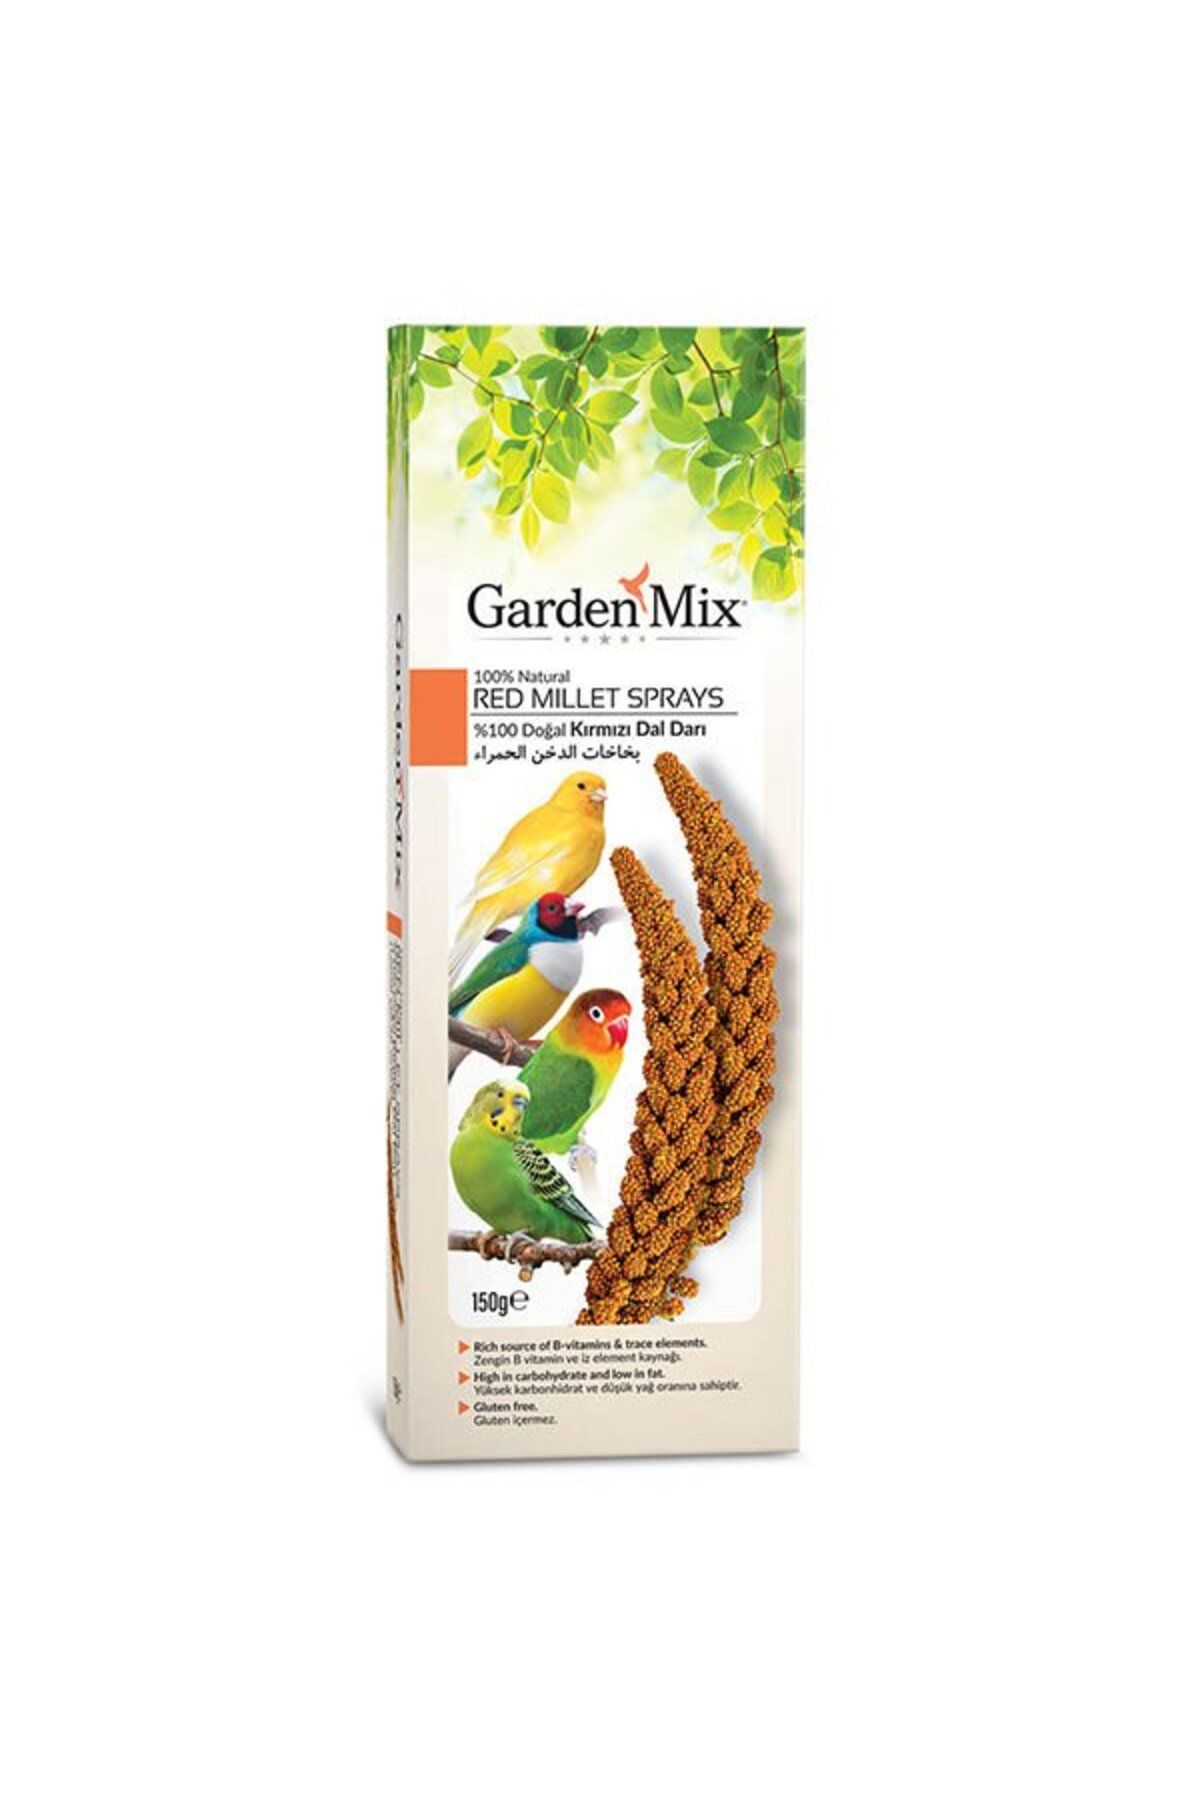 Gardenmix Garden Mix Platin Kırmızı Doğal Dal Darı 150gr